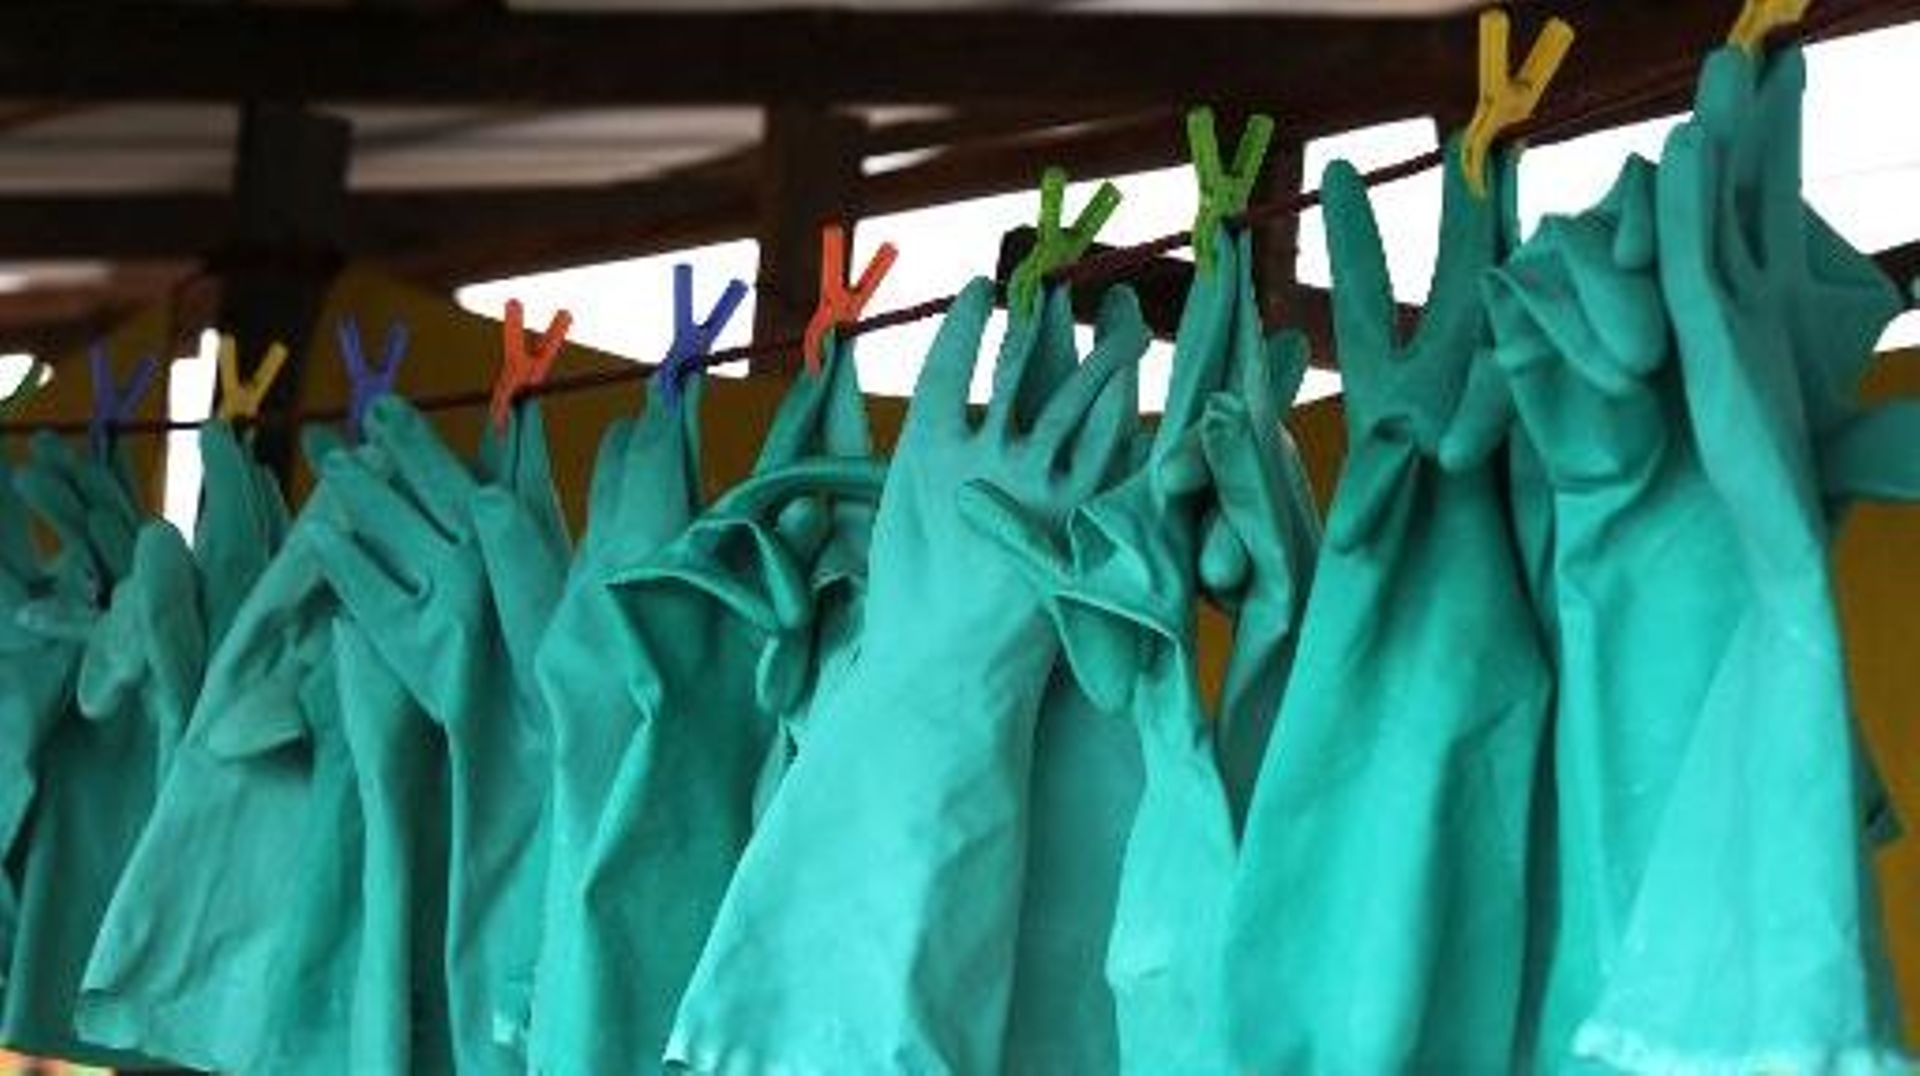 Des gants de protection contre le virus Ebola sèchent après avoir été désinfectés dans l'hôpital de Médecins sans frontières, le 30 août 2014 à Monrovia